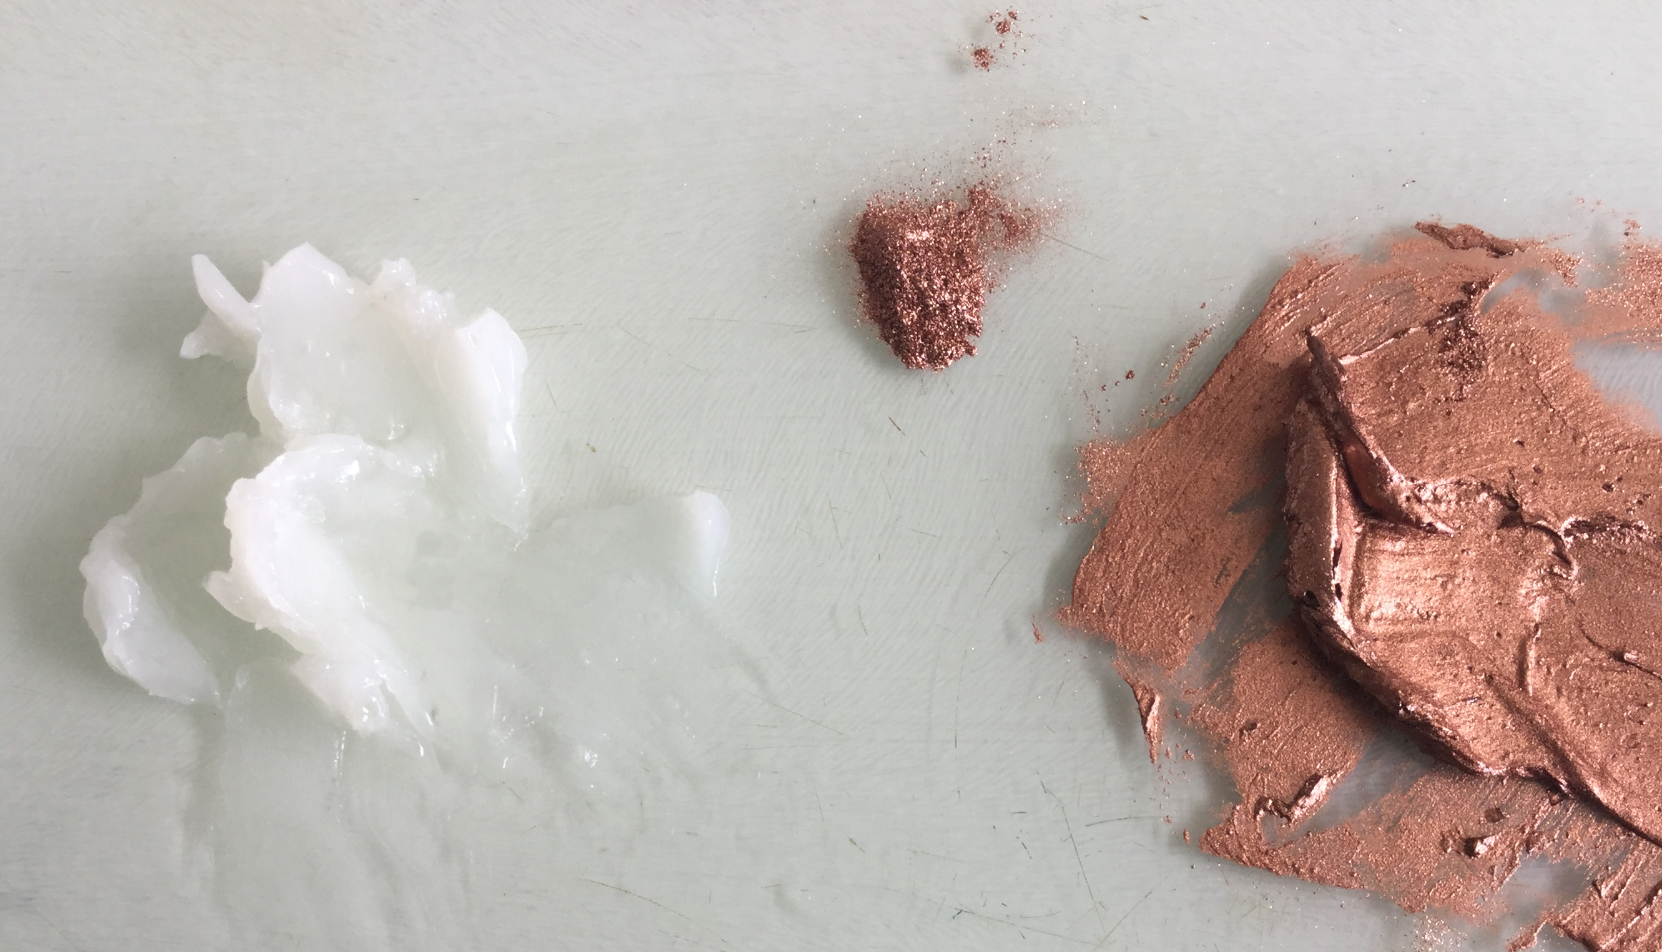 LiquiBlend and copper metallic powder